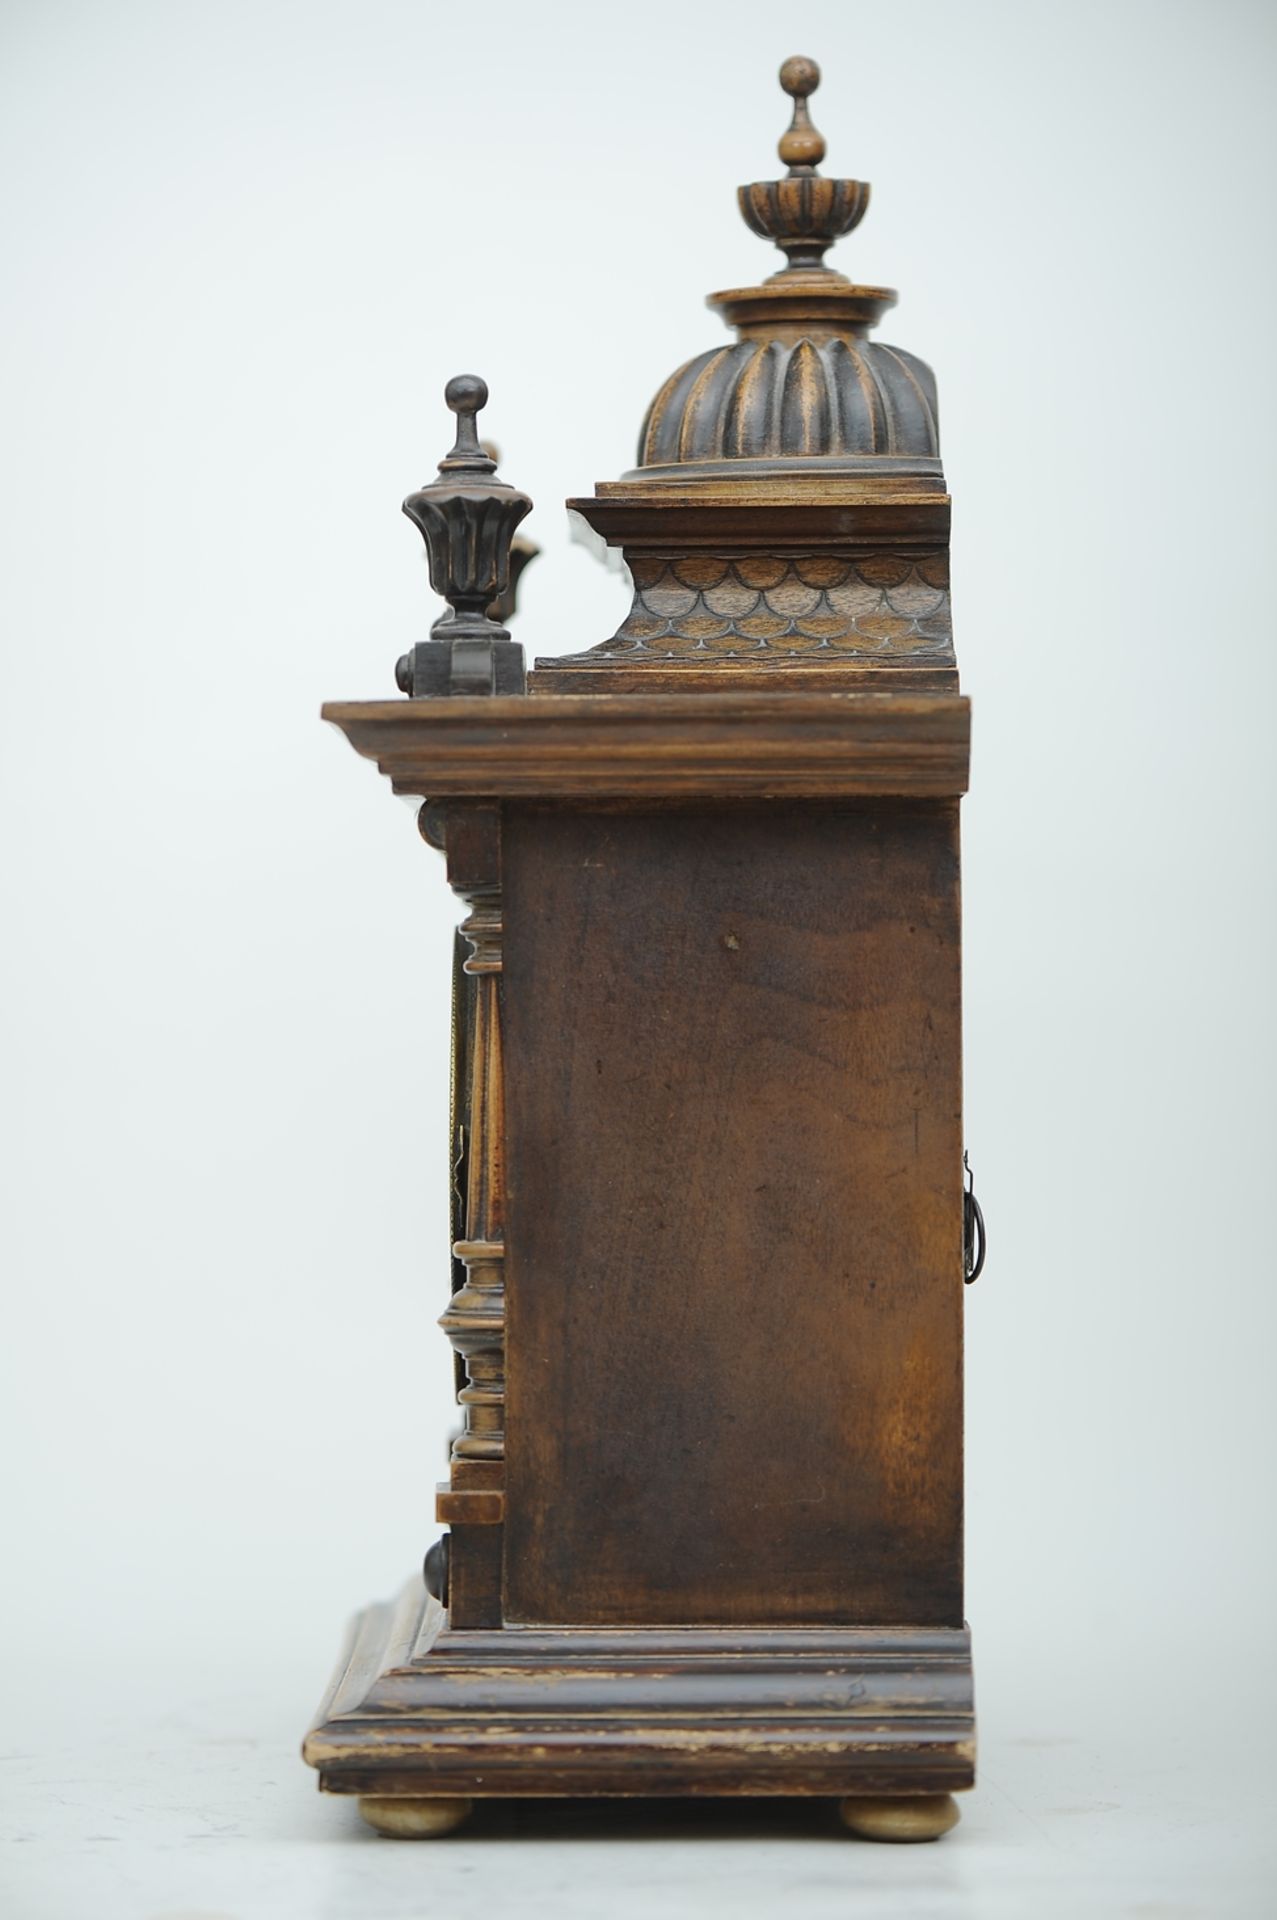 Kaminuhr, Historismus - "The Greenwich Clock" - aufwändig mit "Dachschindeln" und Türmchenabschlüss - Image 14 of 14